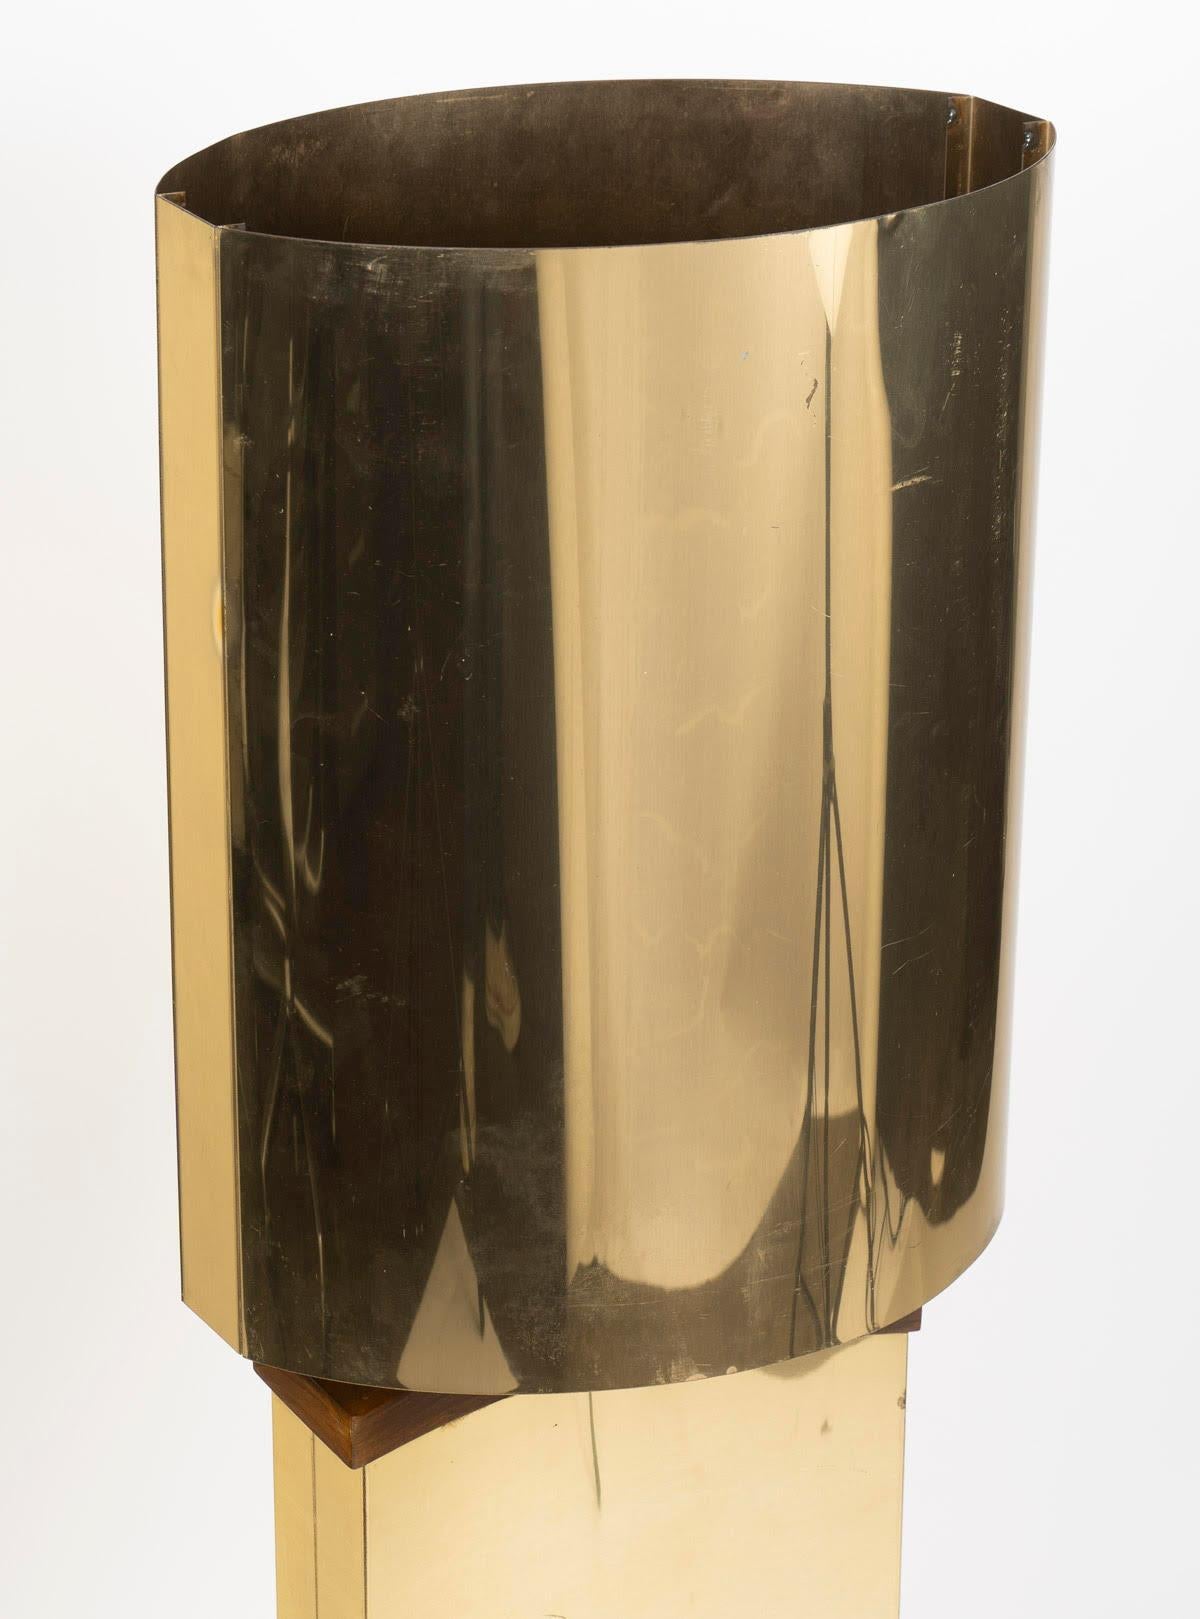 Lampe de table en laiton et bois des années 1970.

Lampe de table en laiton et bois des années 1970, avec de légères rayures et oxydations.  
h : 110cm, l : 37cm, p : 27.5cm
